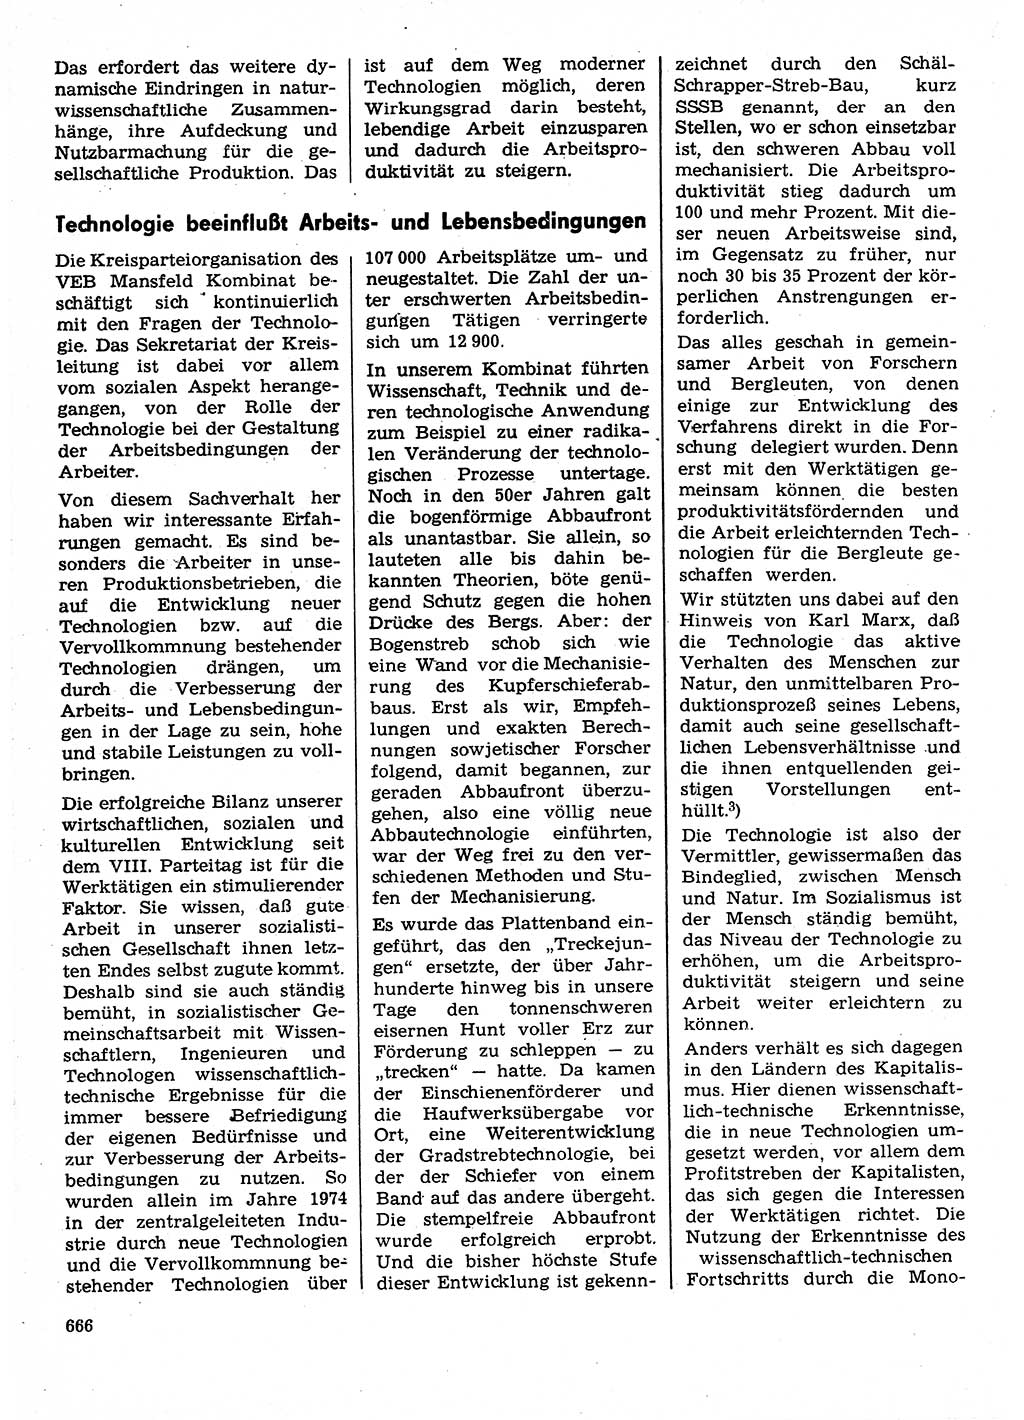 Neuer Weg (NW), Organ des Zentralkomitees (ZK) der SED (Sozialistische Einheitspartei Deutschlands) für Fragen des Parteilebens, 30. Jahrgang [Deutsche Demokratische Republik (DDR)] 1975, Seite 666 (NW ZK SED DDR 1975, S. 666)